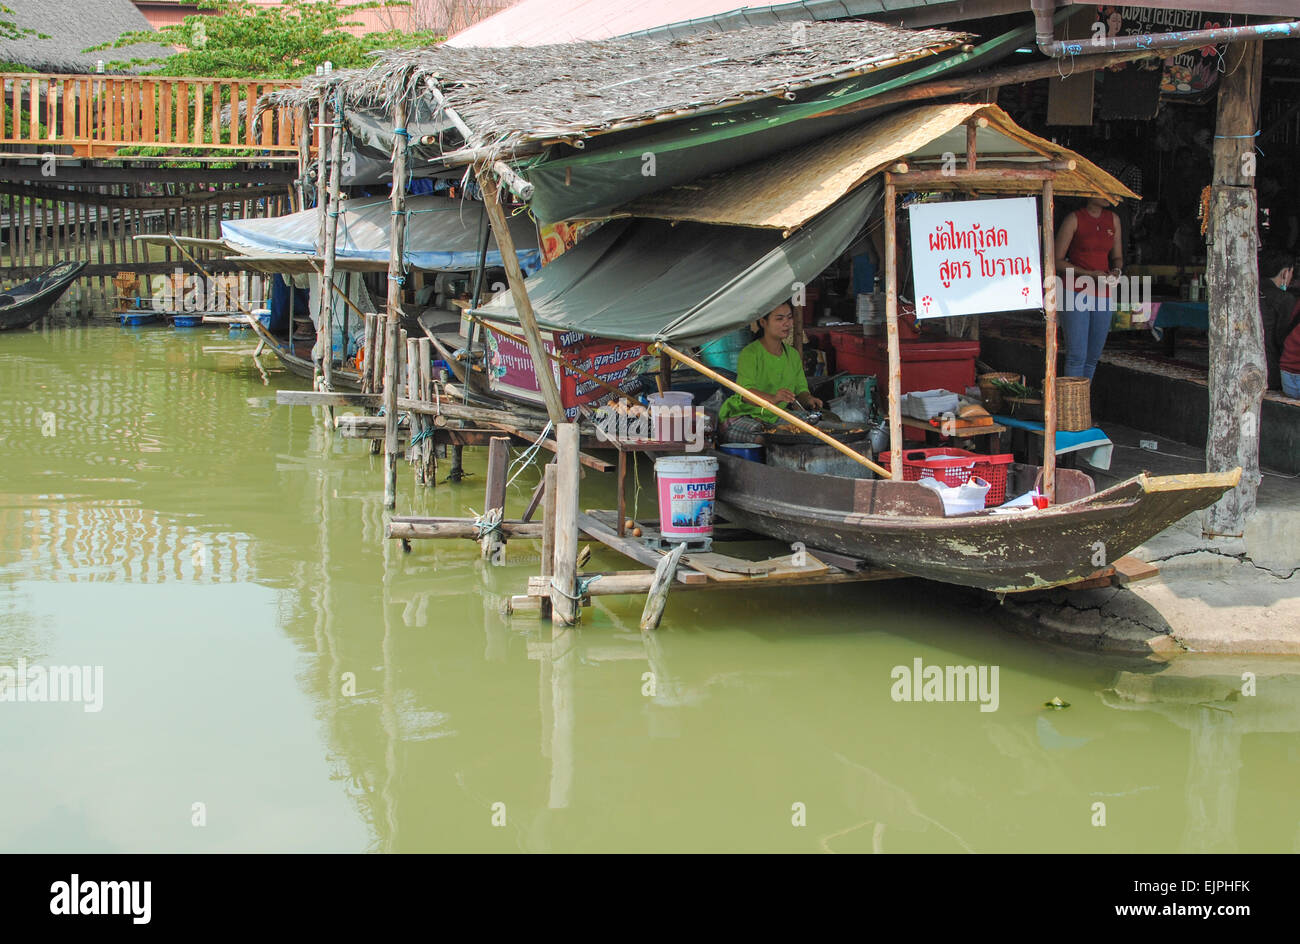 Thailand floating market Stock Photo